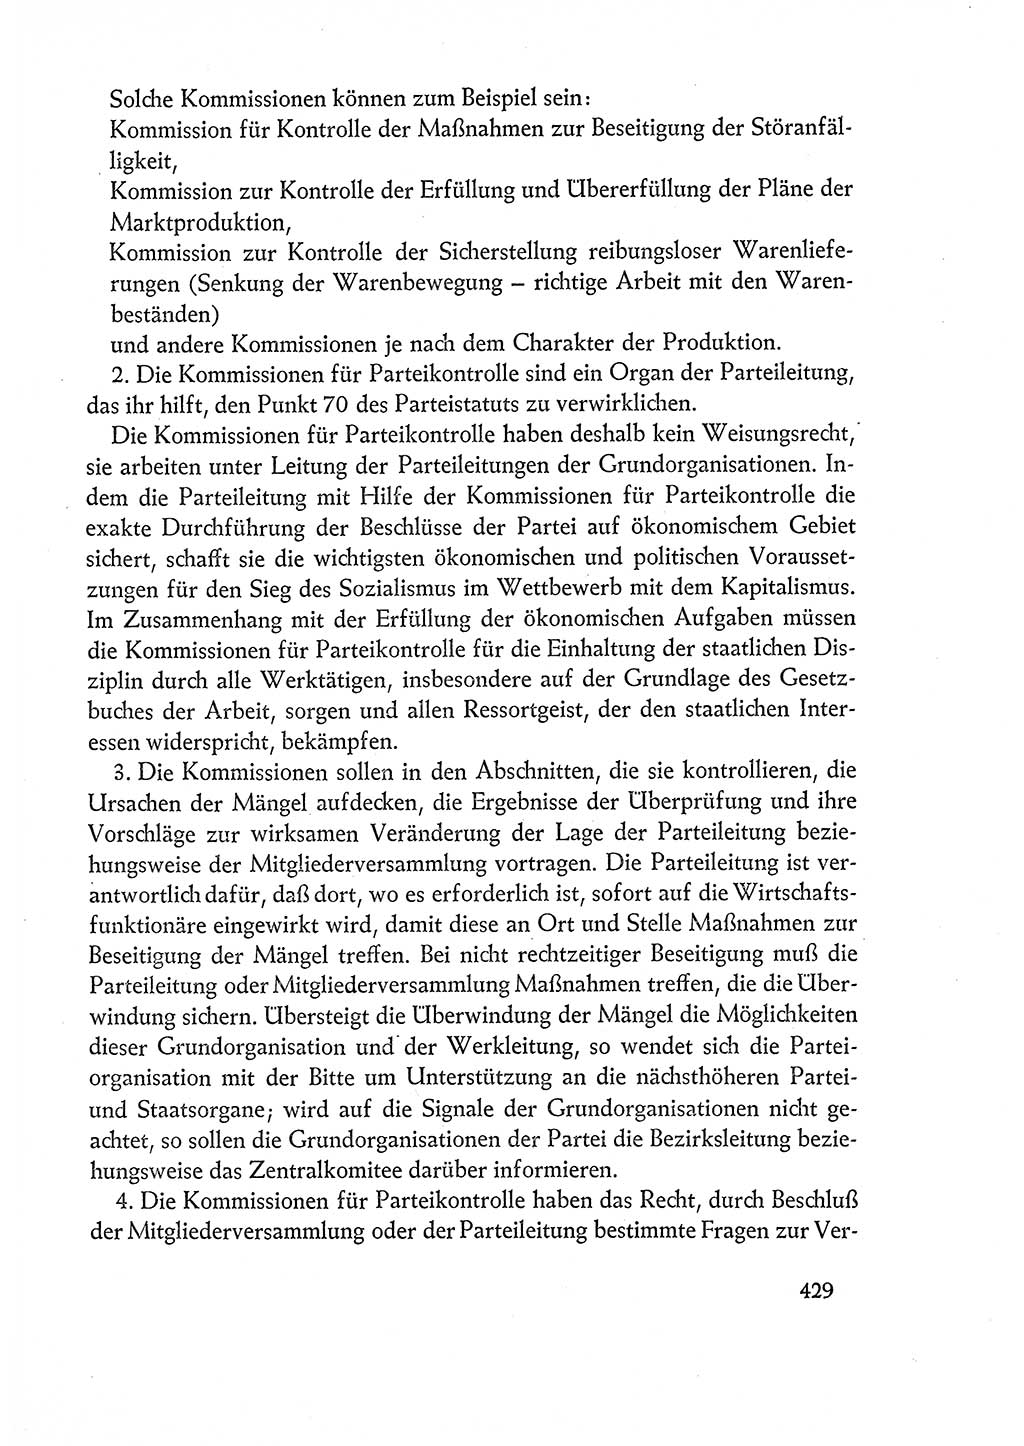 Dokumente der Sozialistischen Einheitspartei Deutschlands (SED) [Deutsche Demokratische Republik (DDR)] 1960-1961, Seite 429 (Dok. SED DDR 1960-1961, S. 429)